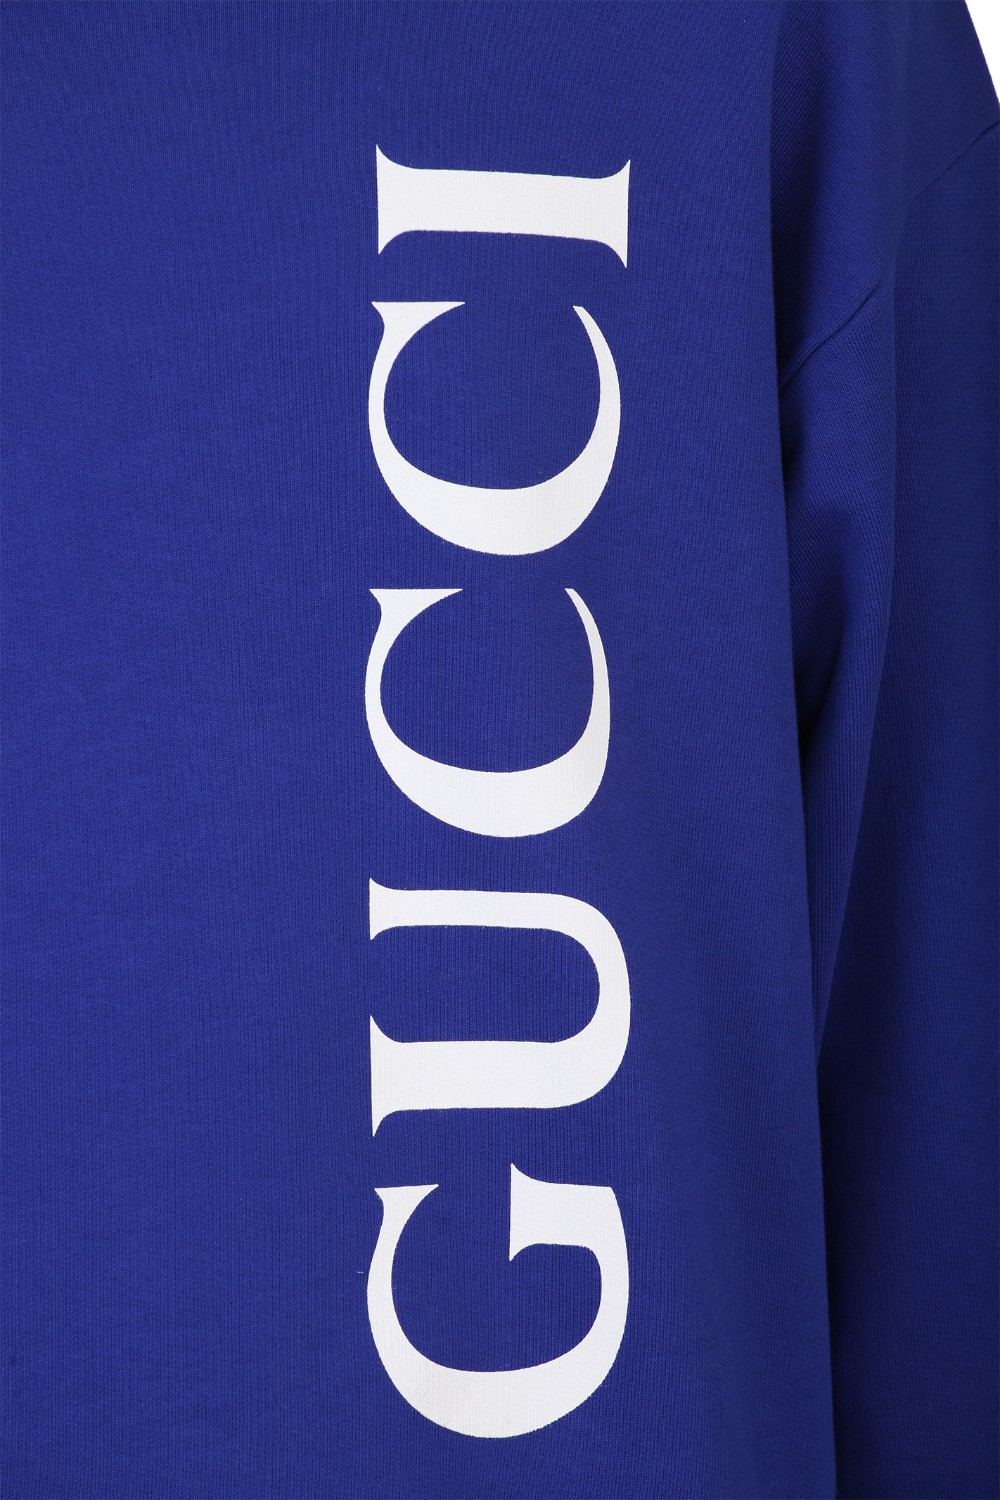 shop GUCCI Saldi Felpa: Gucci felpa in Jersey di cotone blu.
Girocollo.
Maniche lunghe.
Stampa Logo Gucci vintage bianco.
Regular fit.
Composizione: 100% cotone.
Made in Italy.. 599345 XJB1C-4118AZZURRO number 9588659